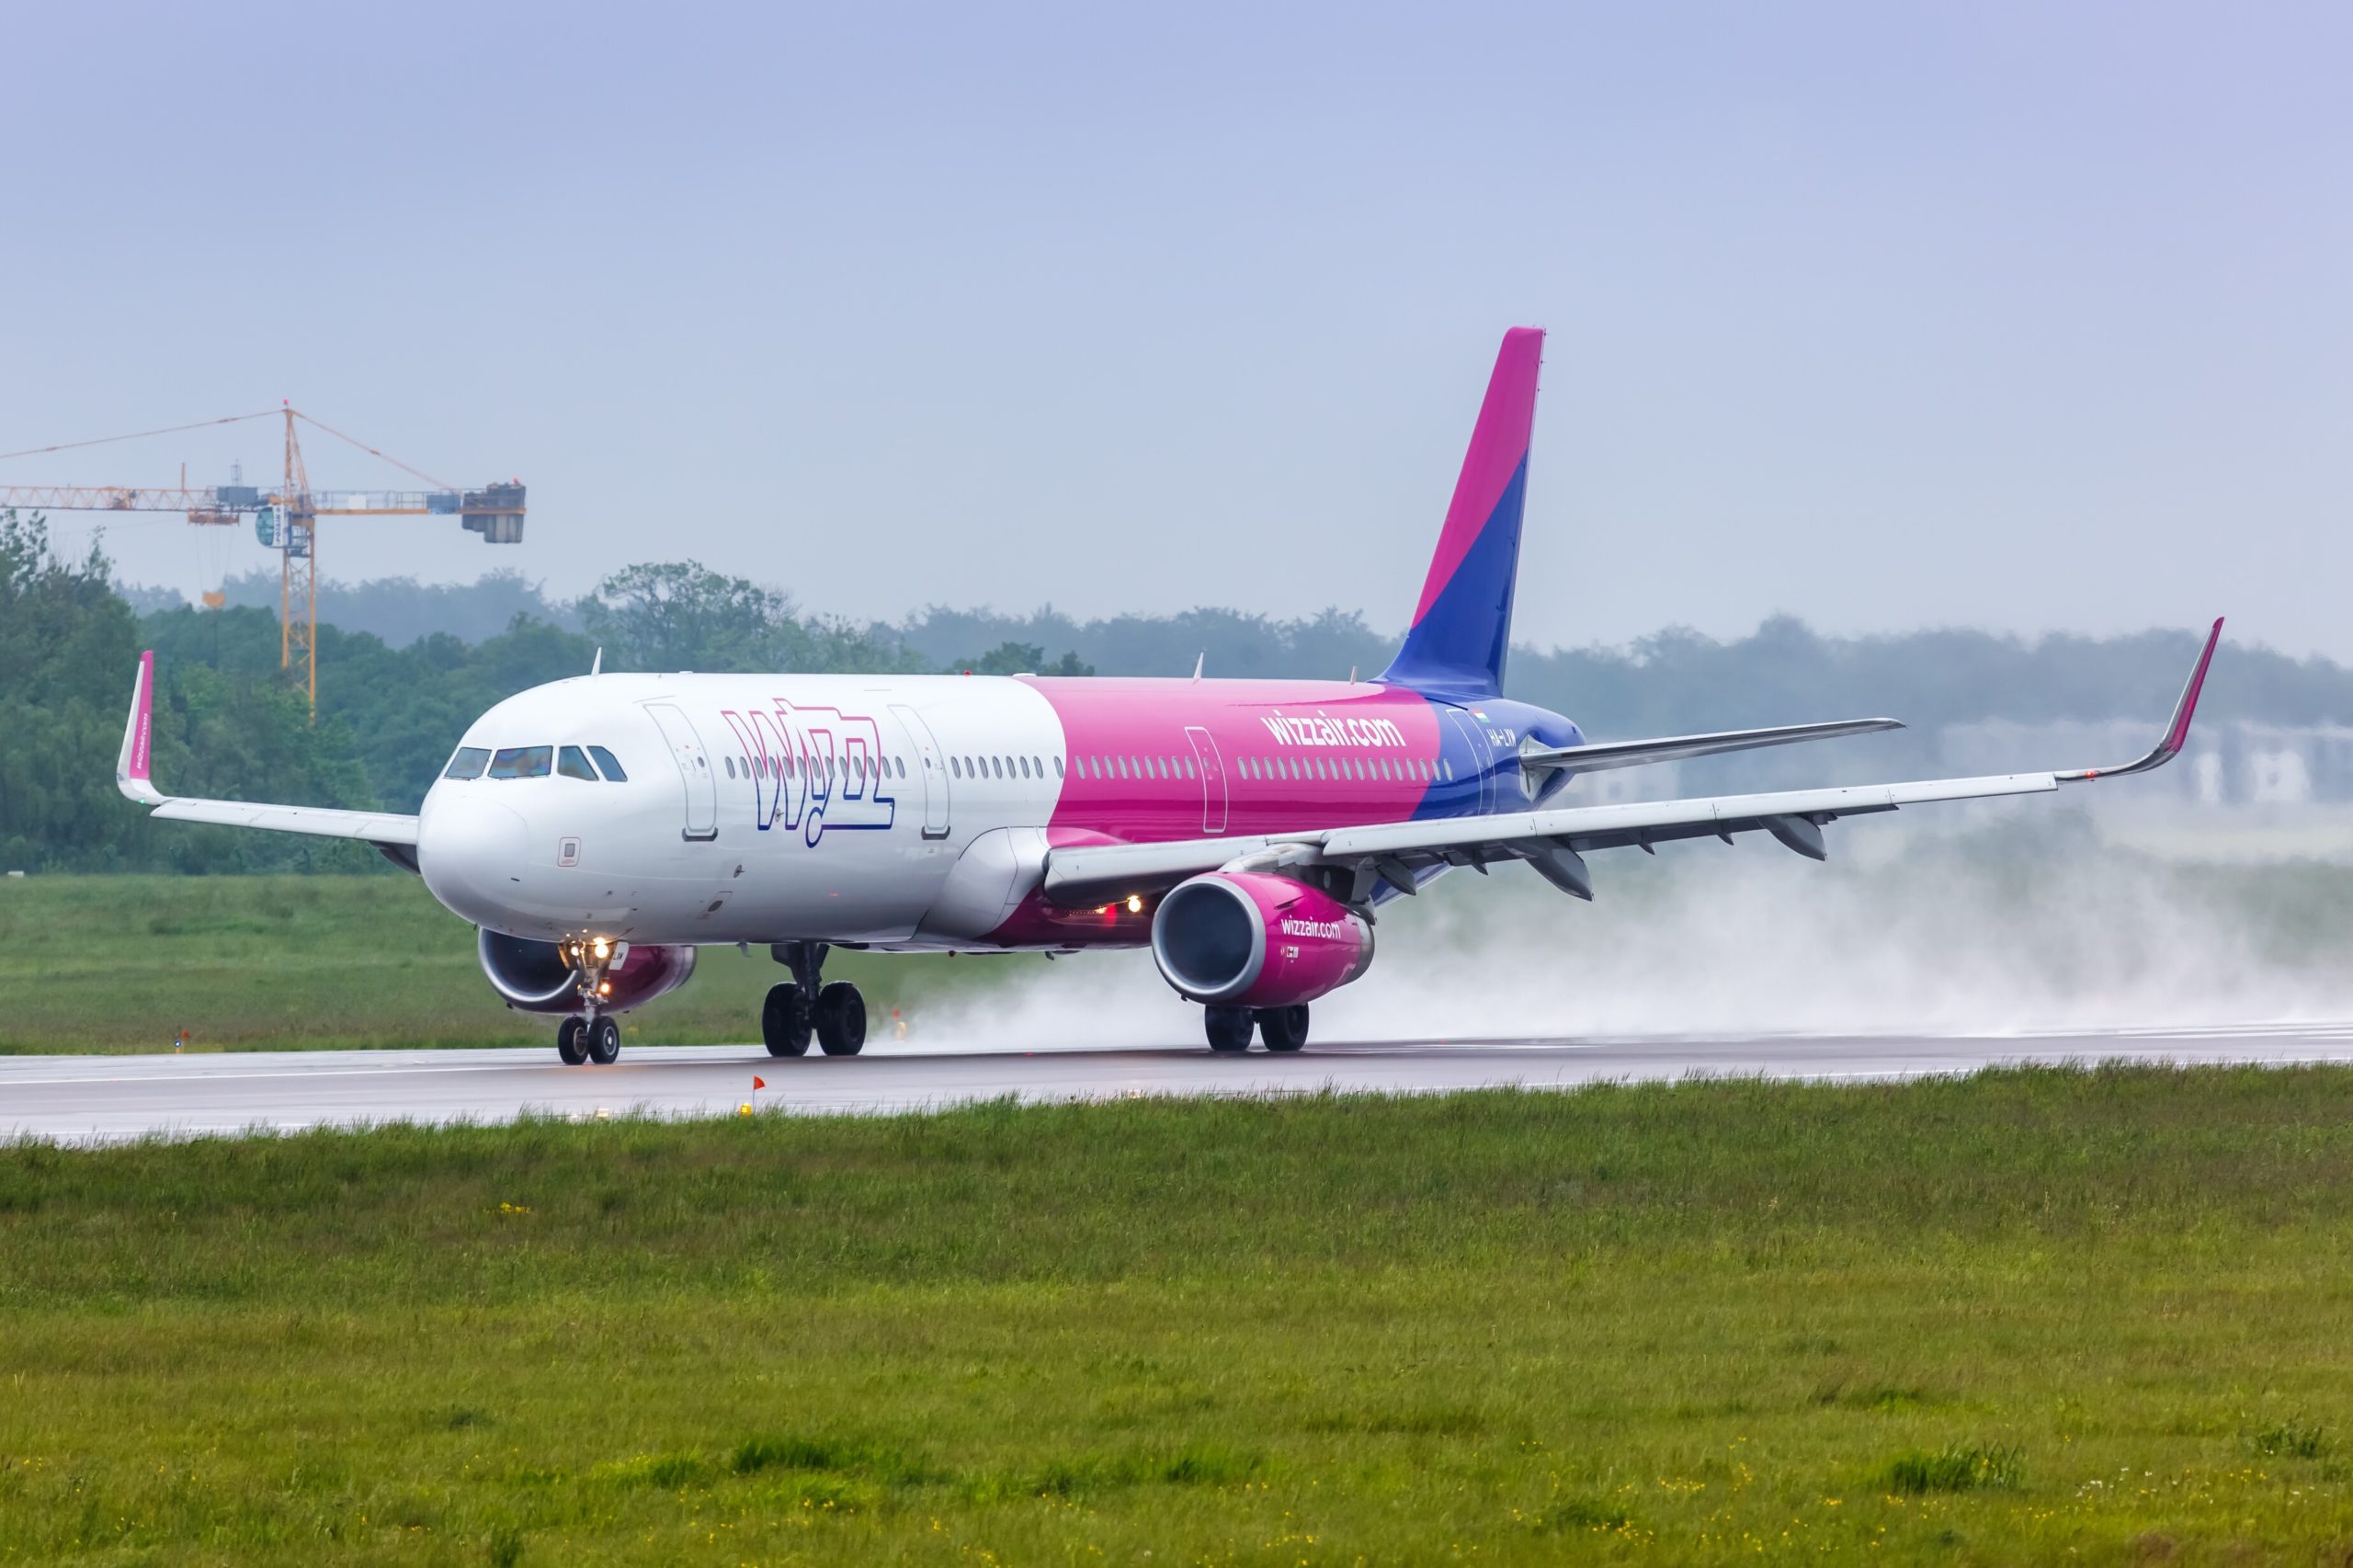 La compagnie hongroise WizzAir va tripler sa flotte pour atteindre 500 avions d'ici à 2030